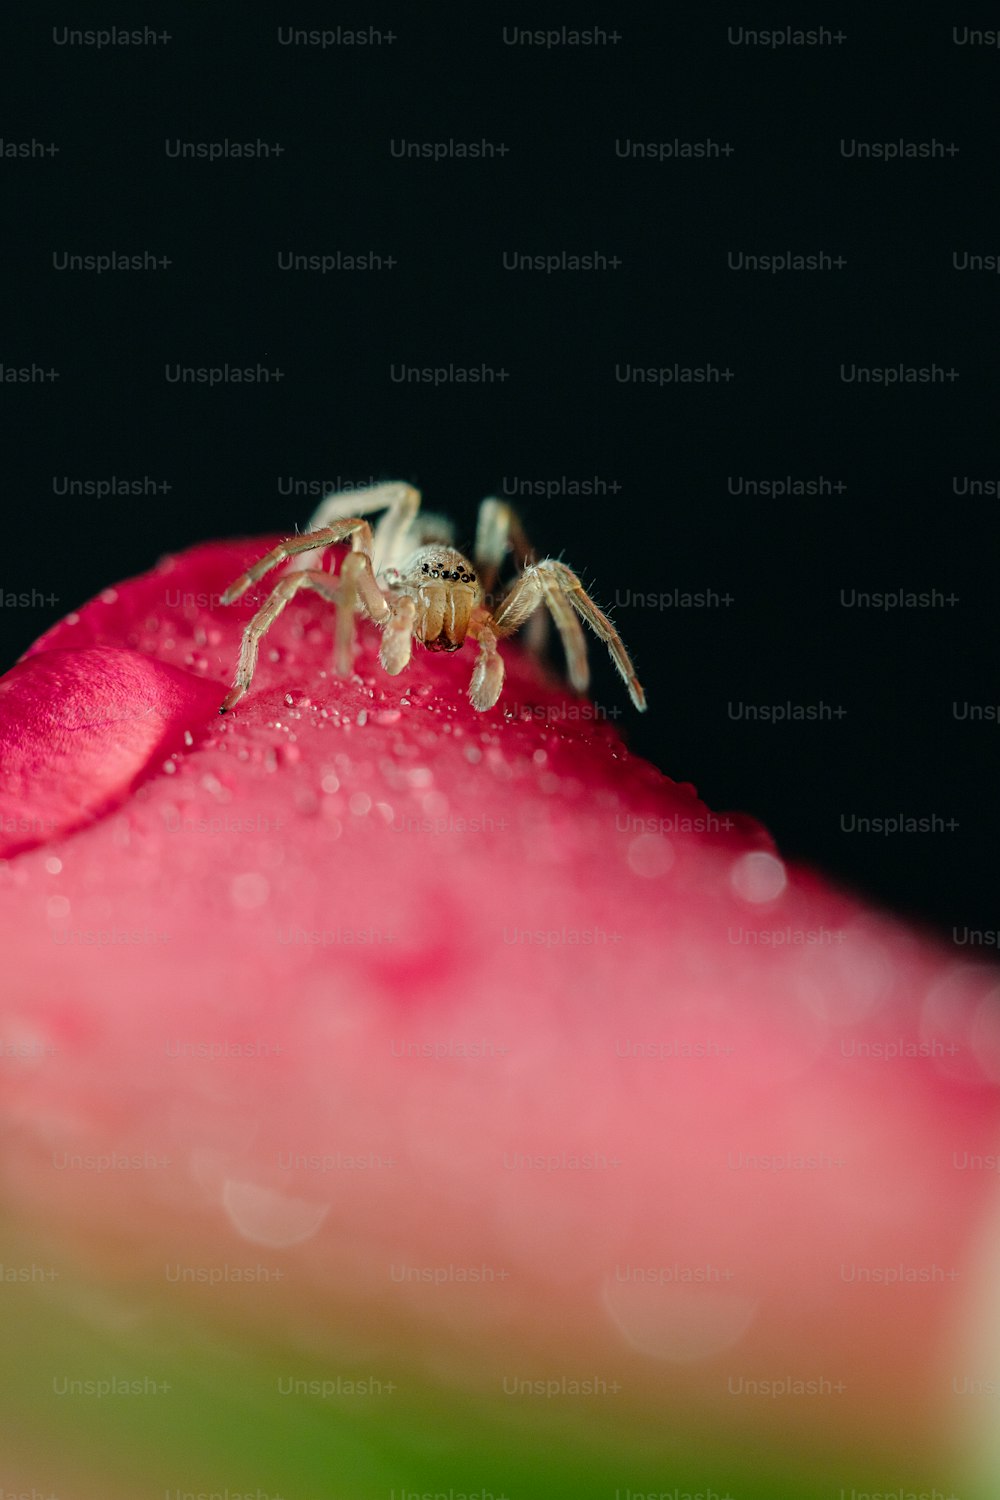 분홍색 꽃 위에 앉아 있는 거미